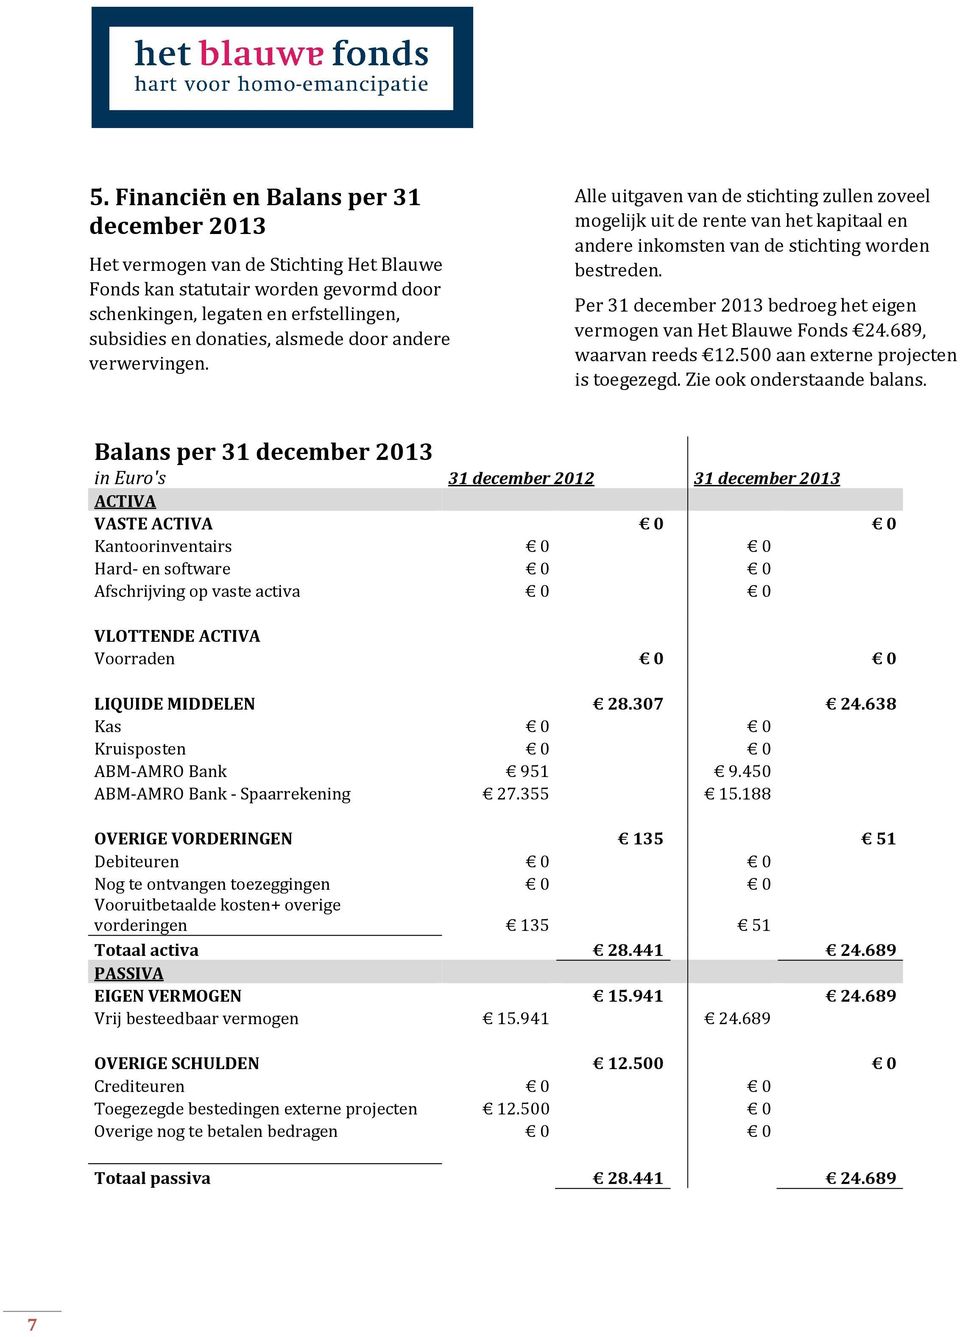 Per 31 december 2013 bedroeg het eigen vermogen van Het Blauwe Fonds 24.689, waarvan reeds 12.500 aan externe projecten is toegezegd. Zie ook onderstaande balans.